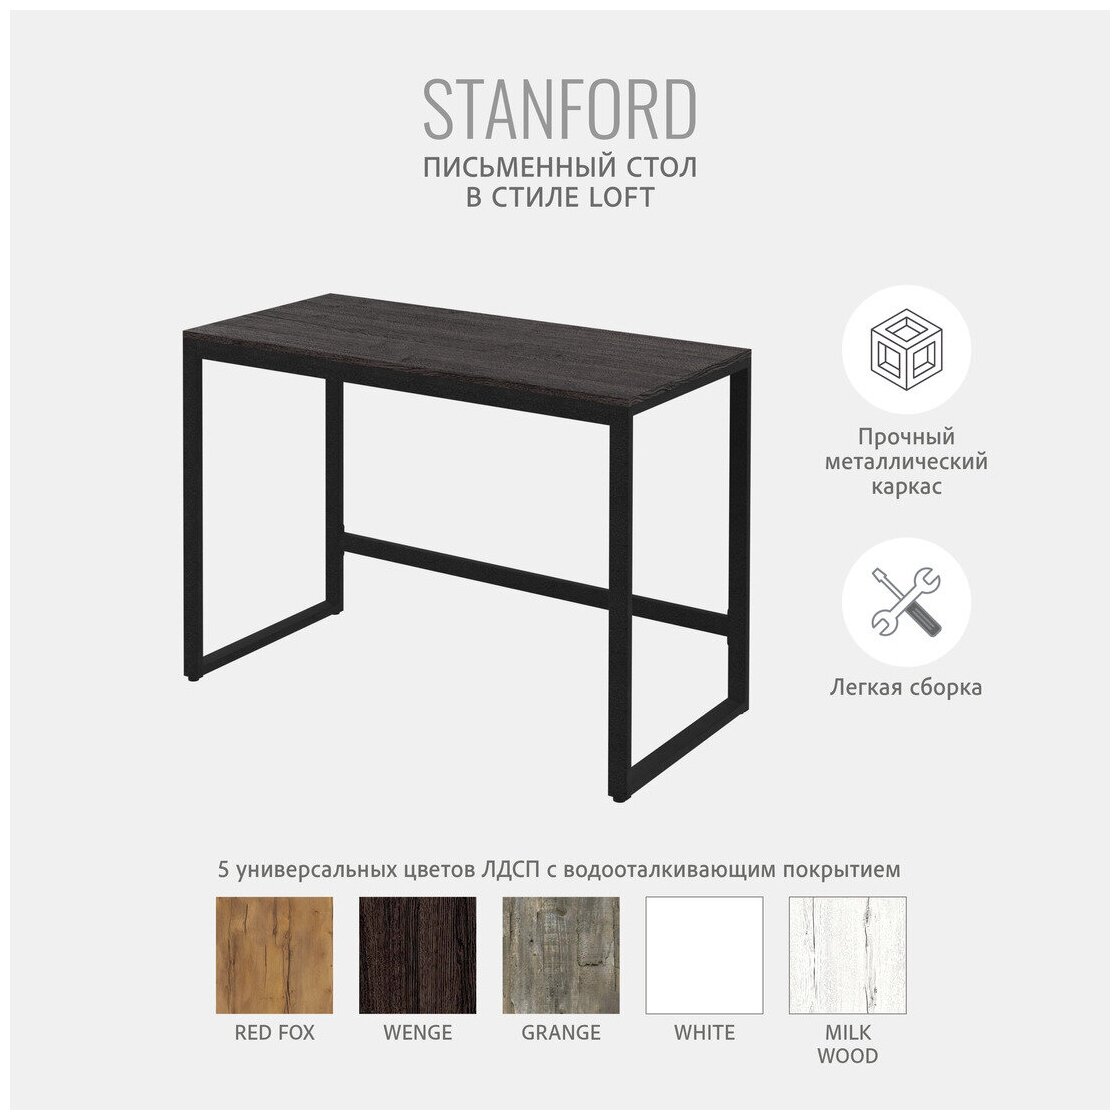 Стол письменный темно-коричневый, компьютерный, офисный, кухонный, лофт 110x55x75 см, STANFORD loft, Гростат - фотография № 2